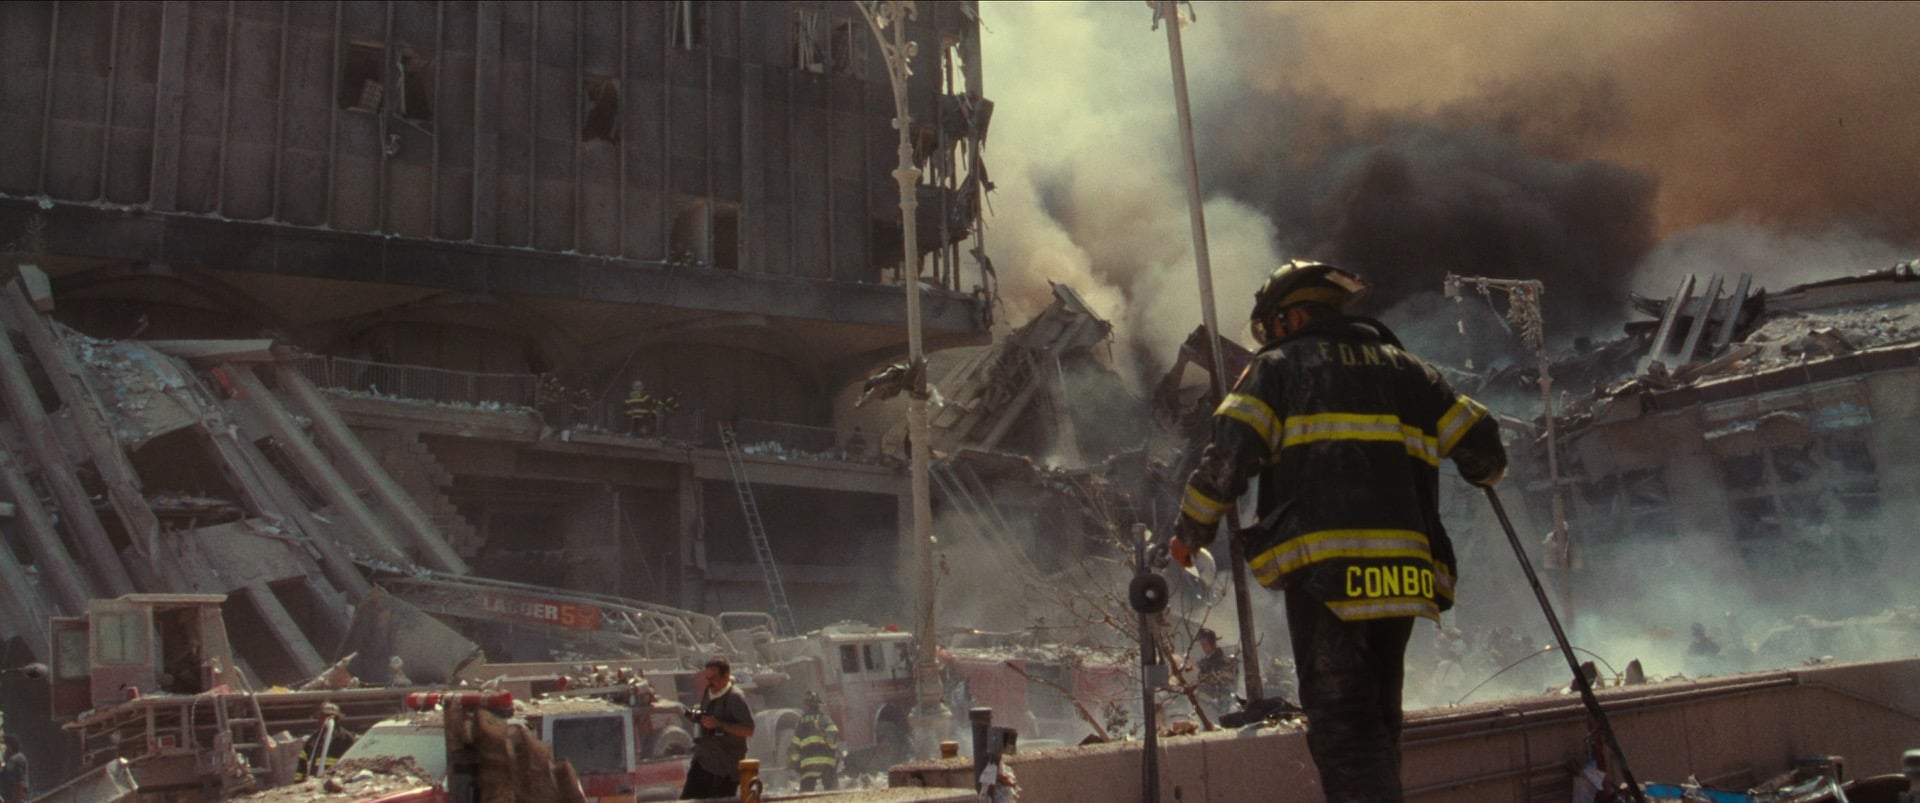 Punkty zwrotne: 11 września i wojna z terroryzmem, Netflix